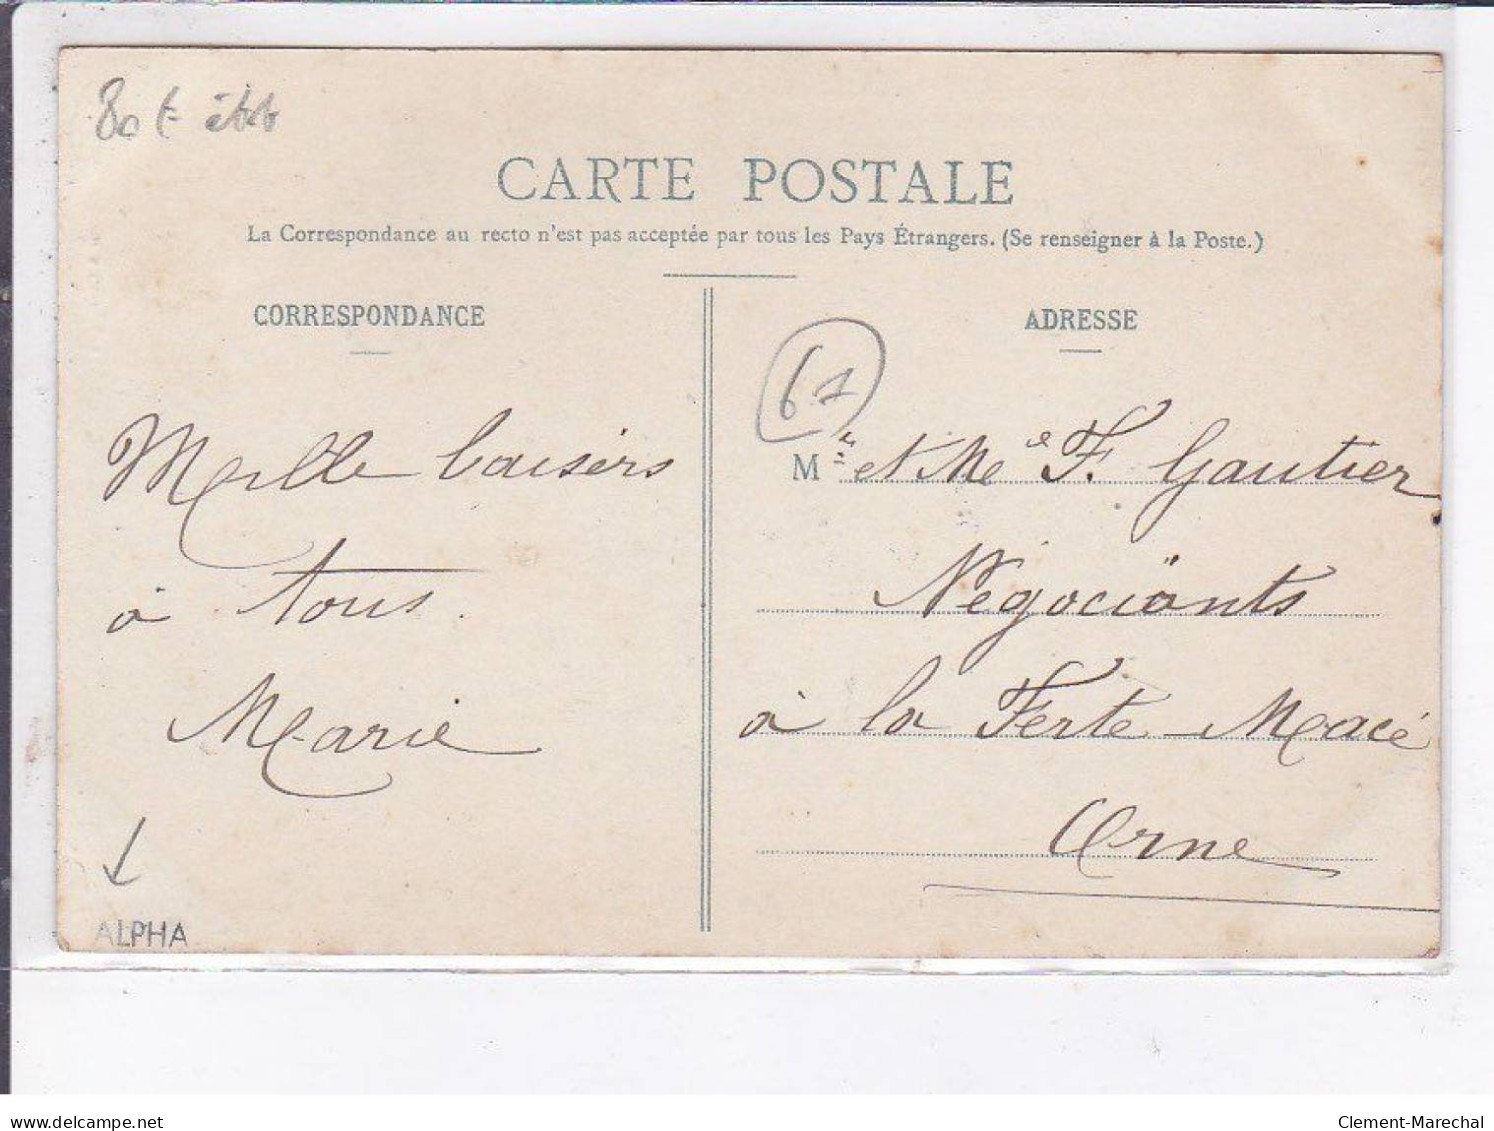 CARROUGES: Souvenir Des Fêtes 1908, Le Char Des électriciens, La Patrie - état - Carrouges